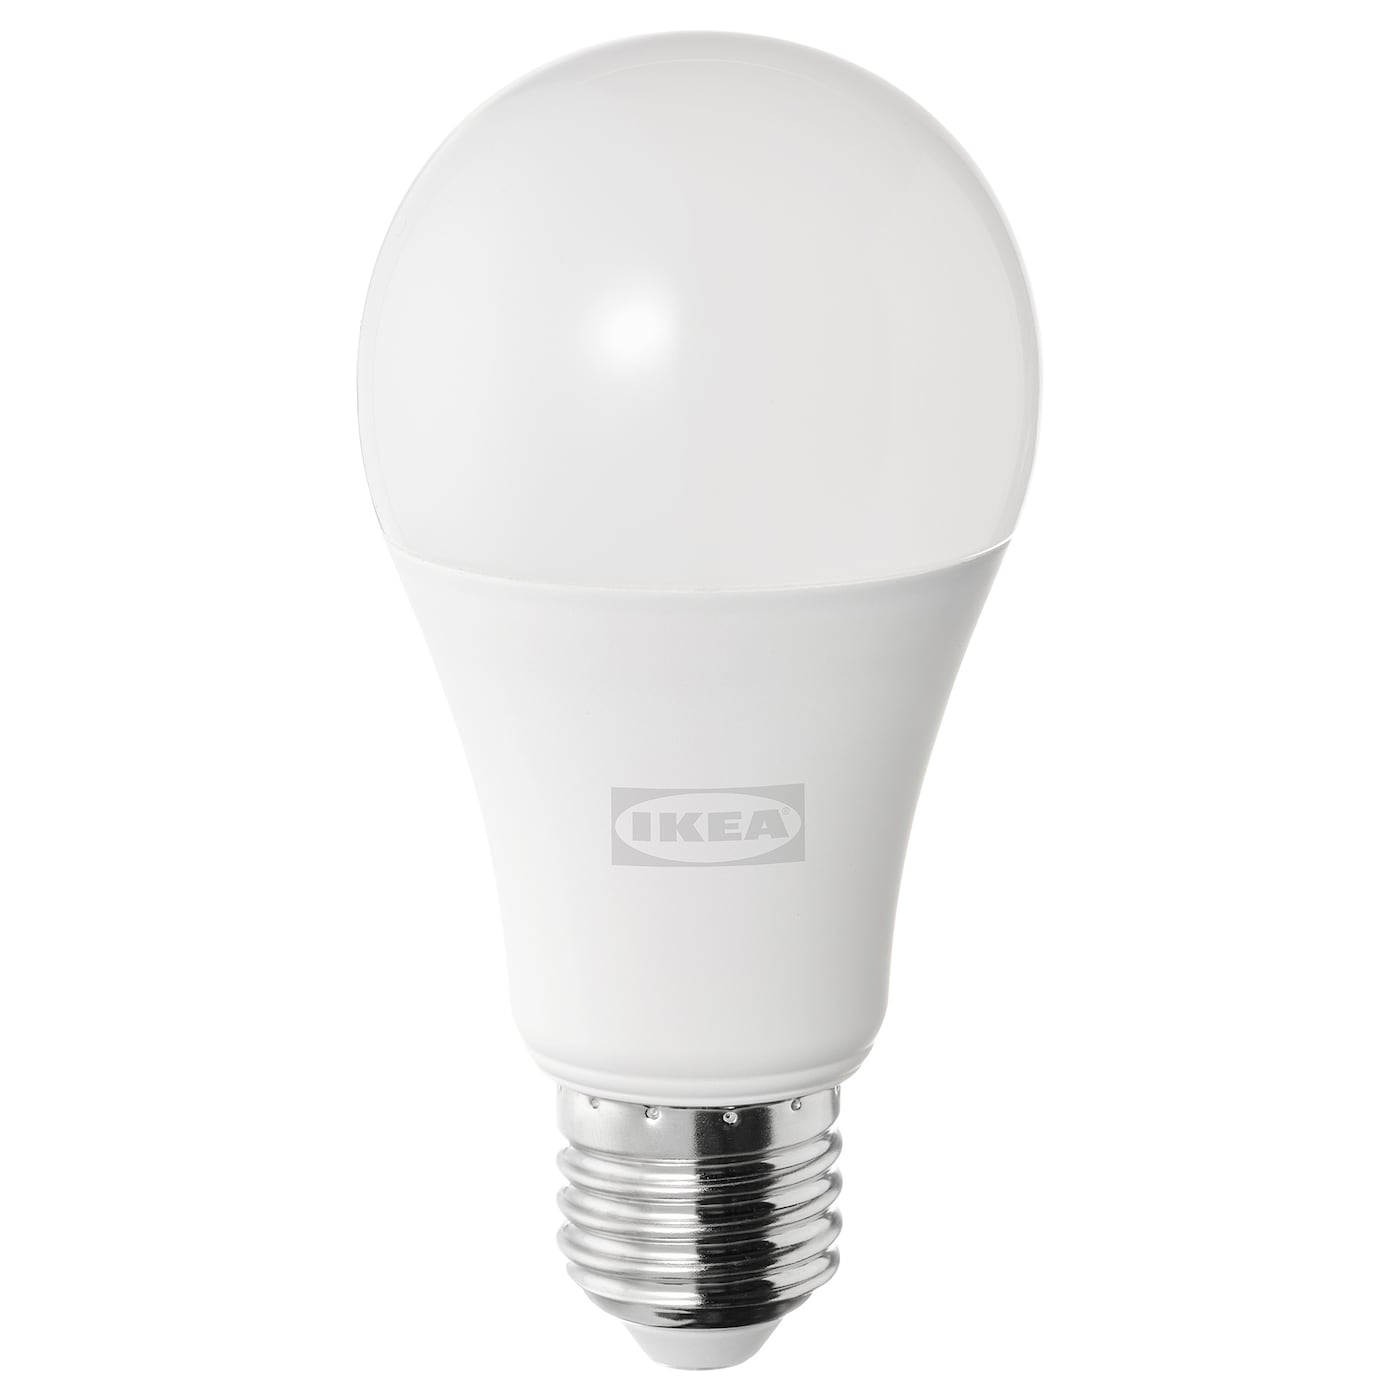 SOLHETTA СОЛХЕТТА Светодиодная лампочка E27 1521 лм, регулируемая яркость/шаровидный молочный IKEA